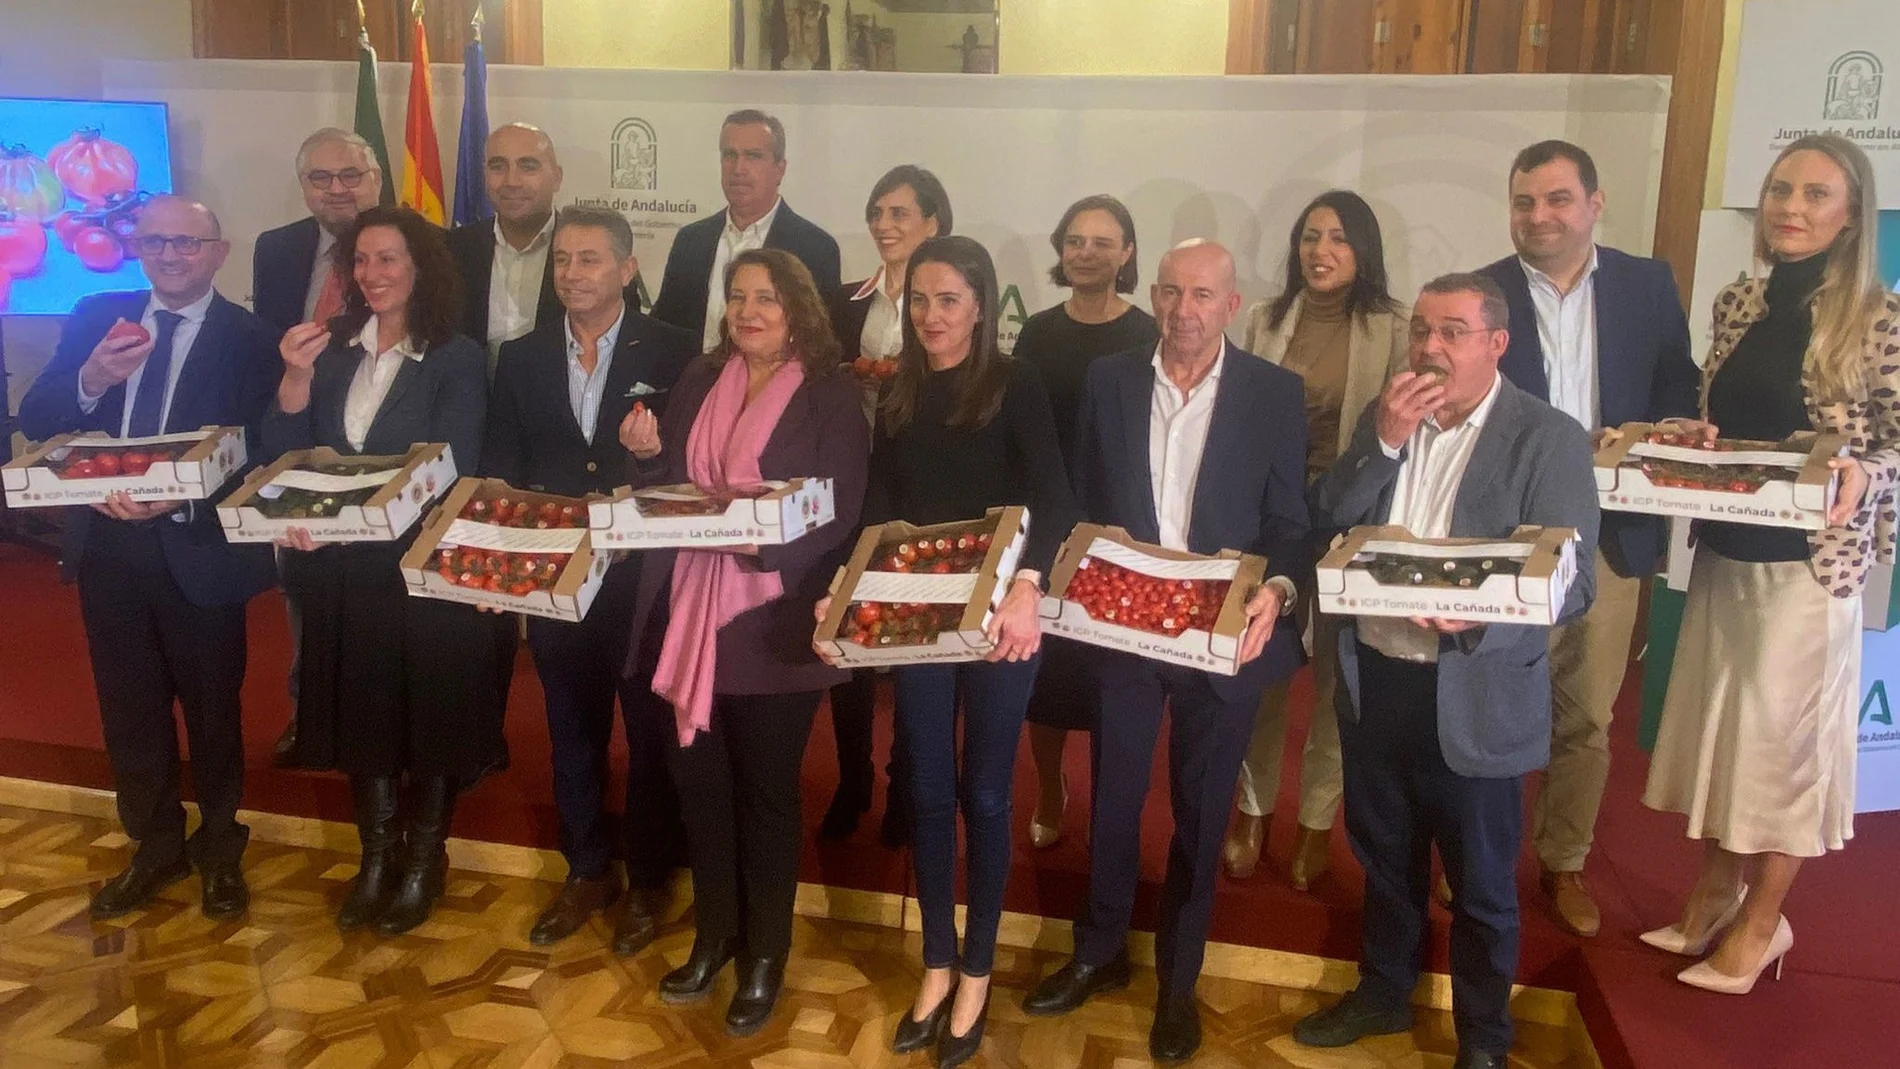 La consejera de Agricultura de la Junta de Andalucía, Carmen Crespo, en un acto de apoyo a la IGP Tomate La Cañada